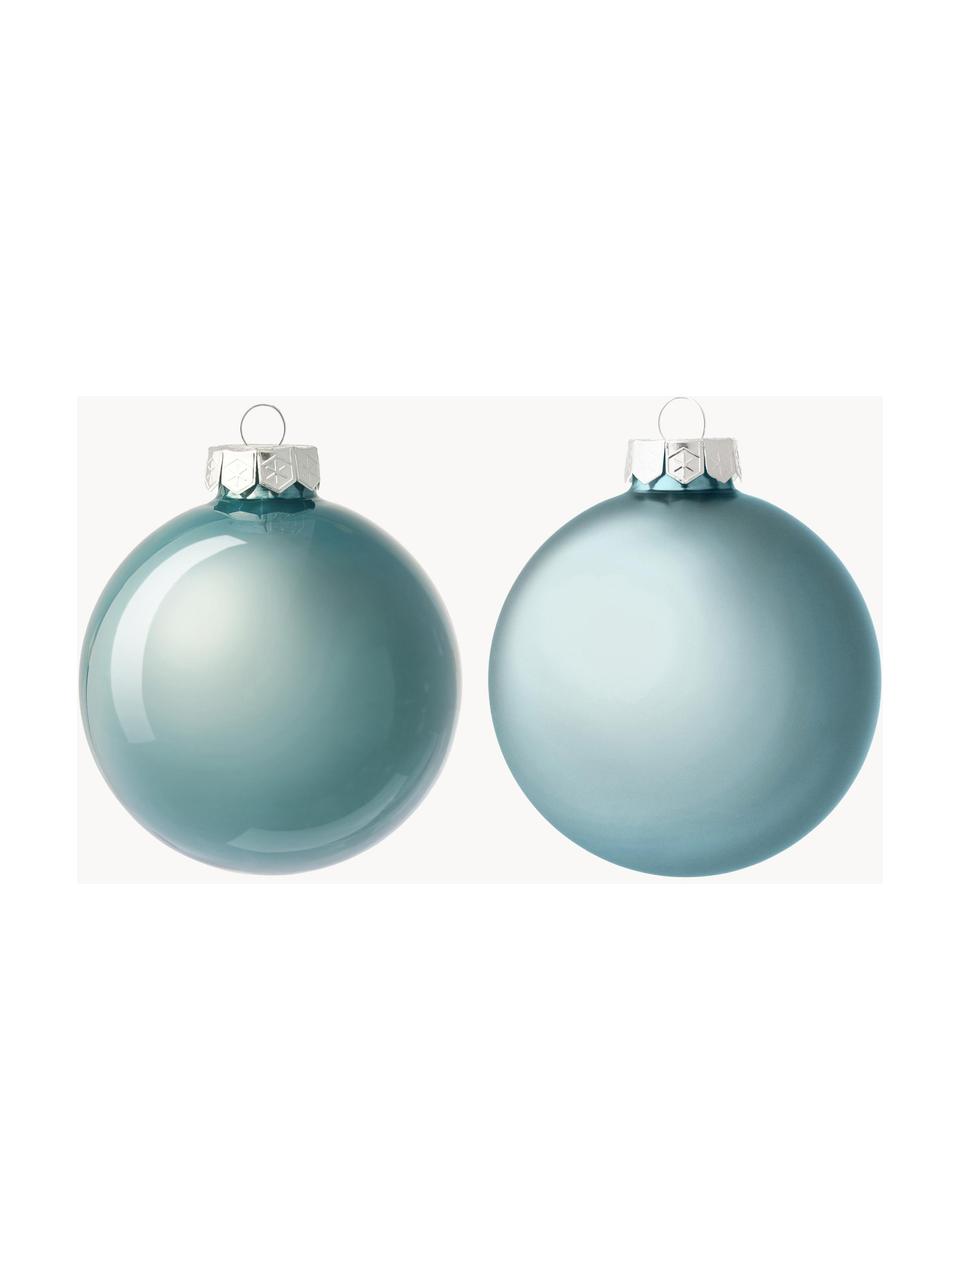 Sada vánočních ozdob Evergreen, 6 dílů, Světle modrá, Ø 8 cm, 6 ks